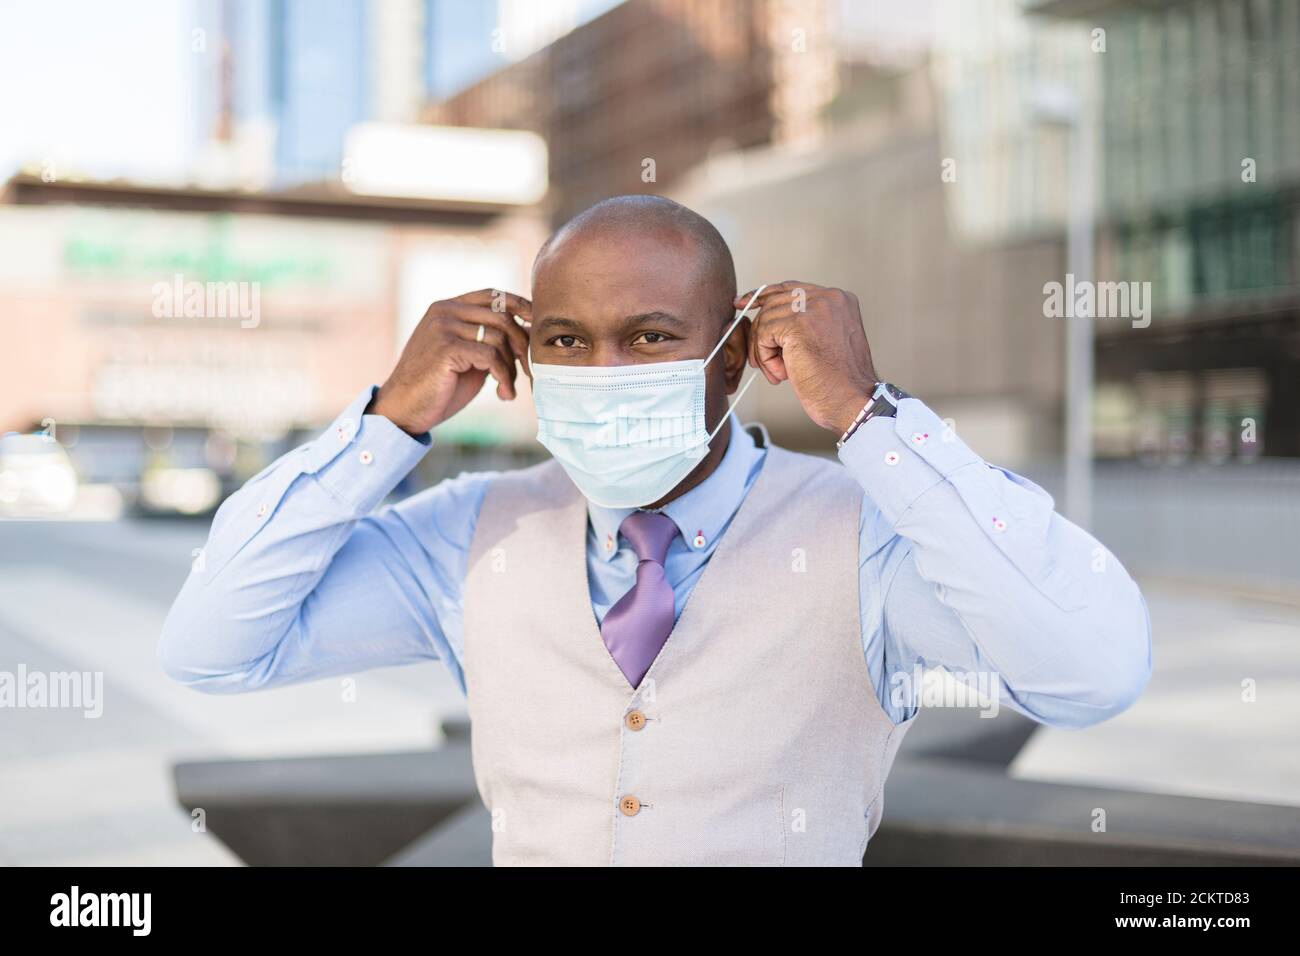 Porträt eines schwarzen Mannes, der eine medizinische Maske auf sein Gesicht legt. Er ist draußen in der Stadt. Konzept der neuen Normalität. Stockfoto